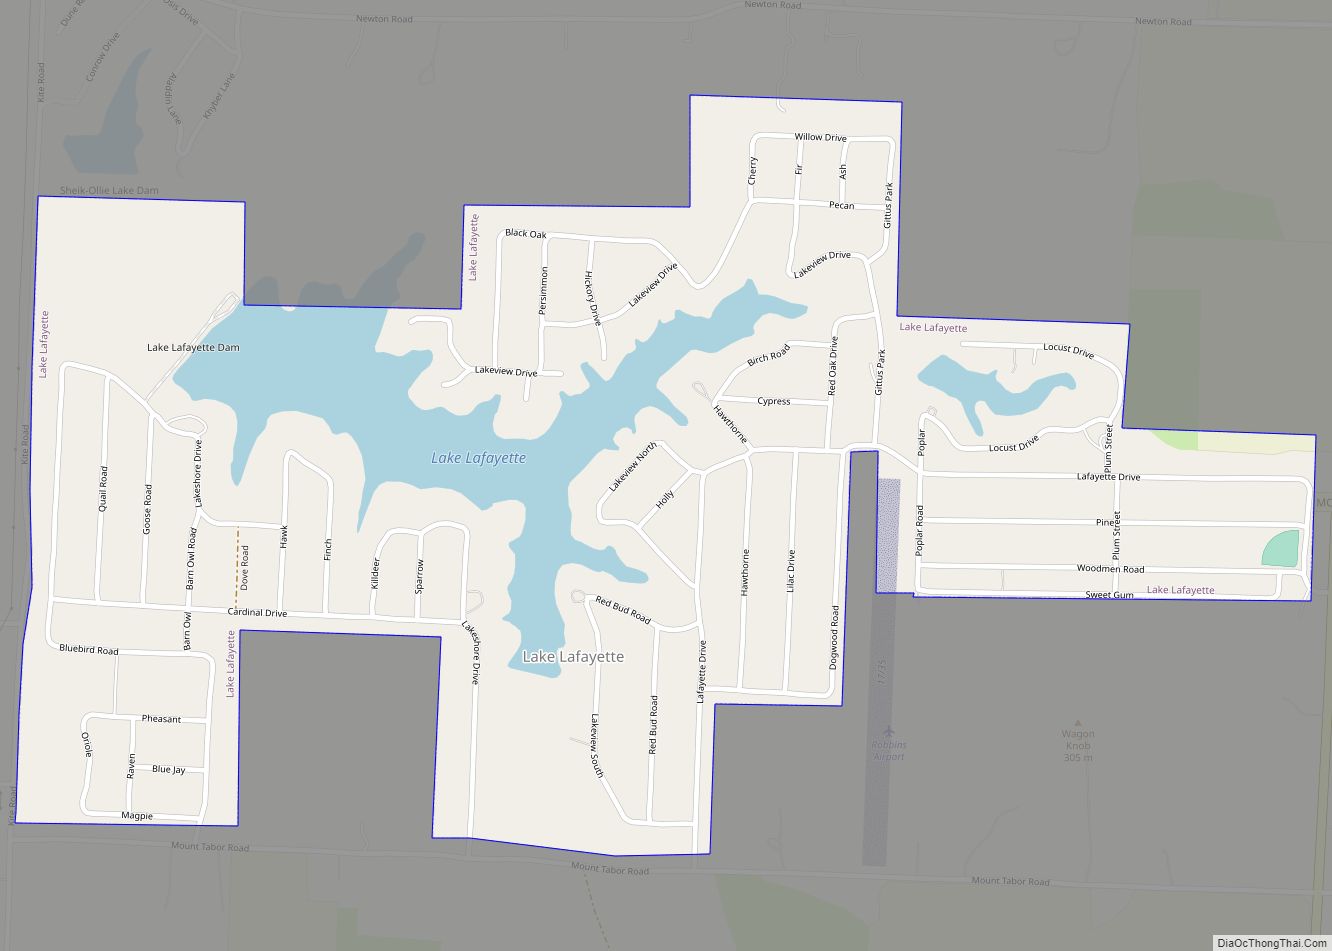 Map of Lake Lafayette city